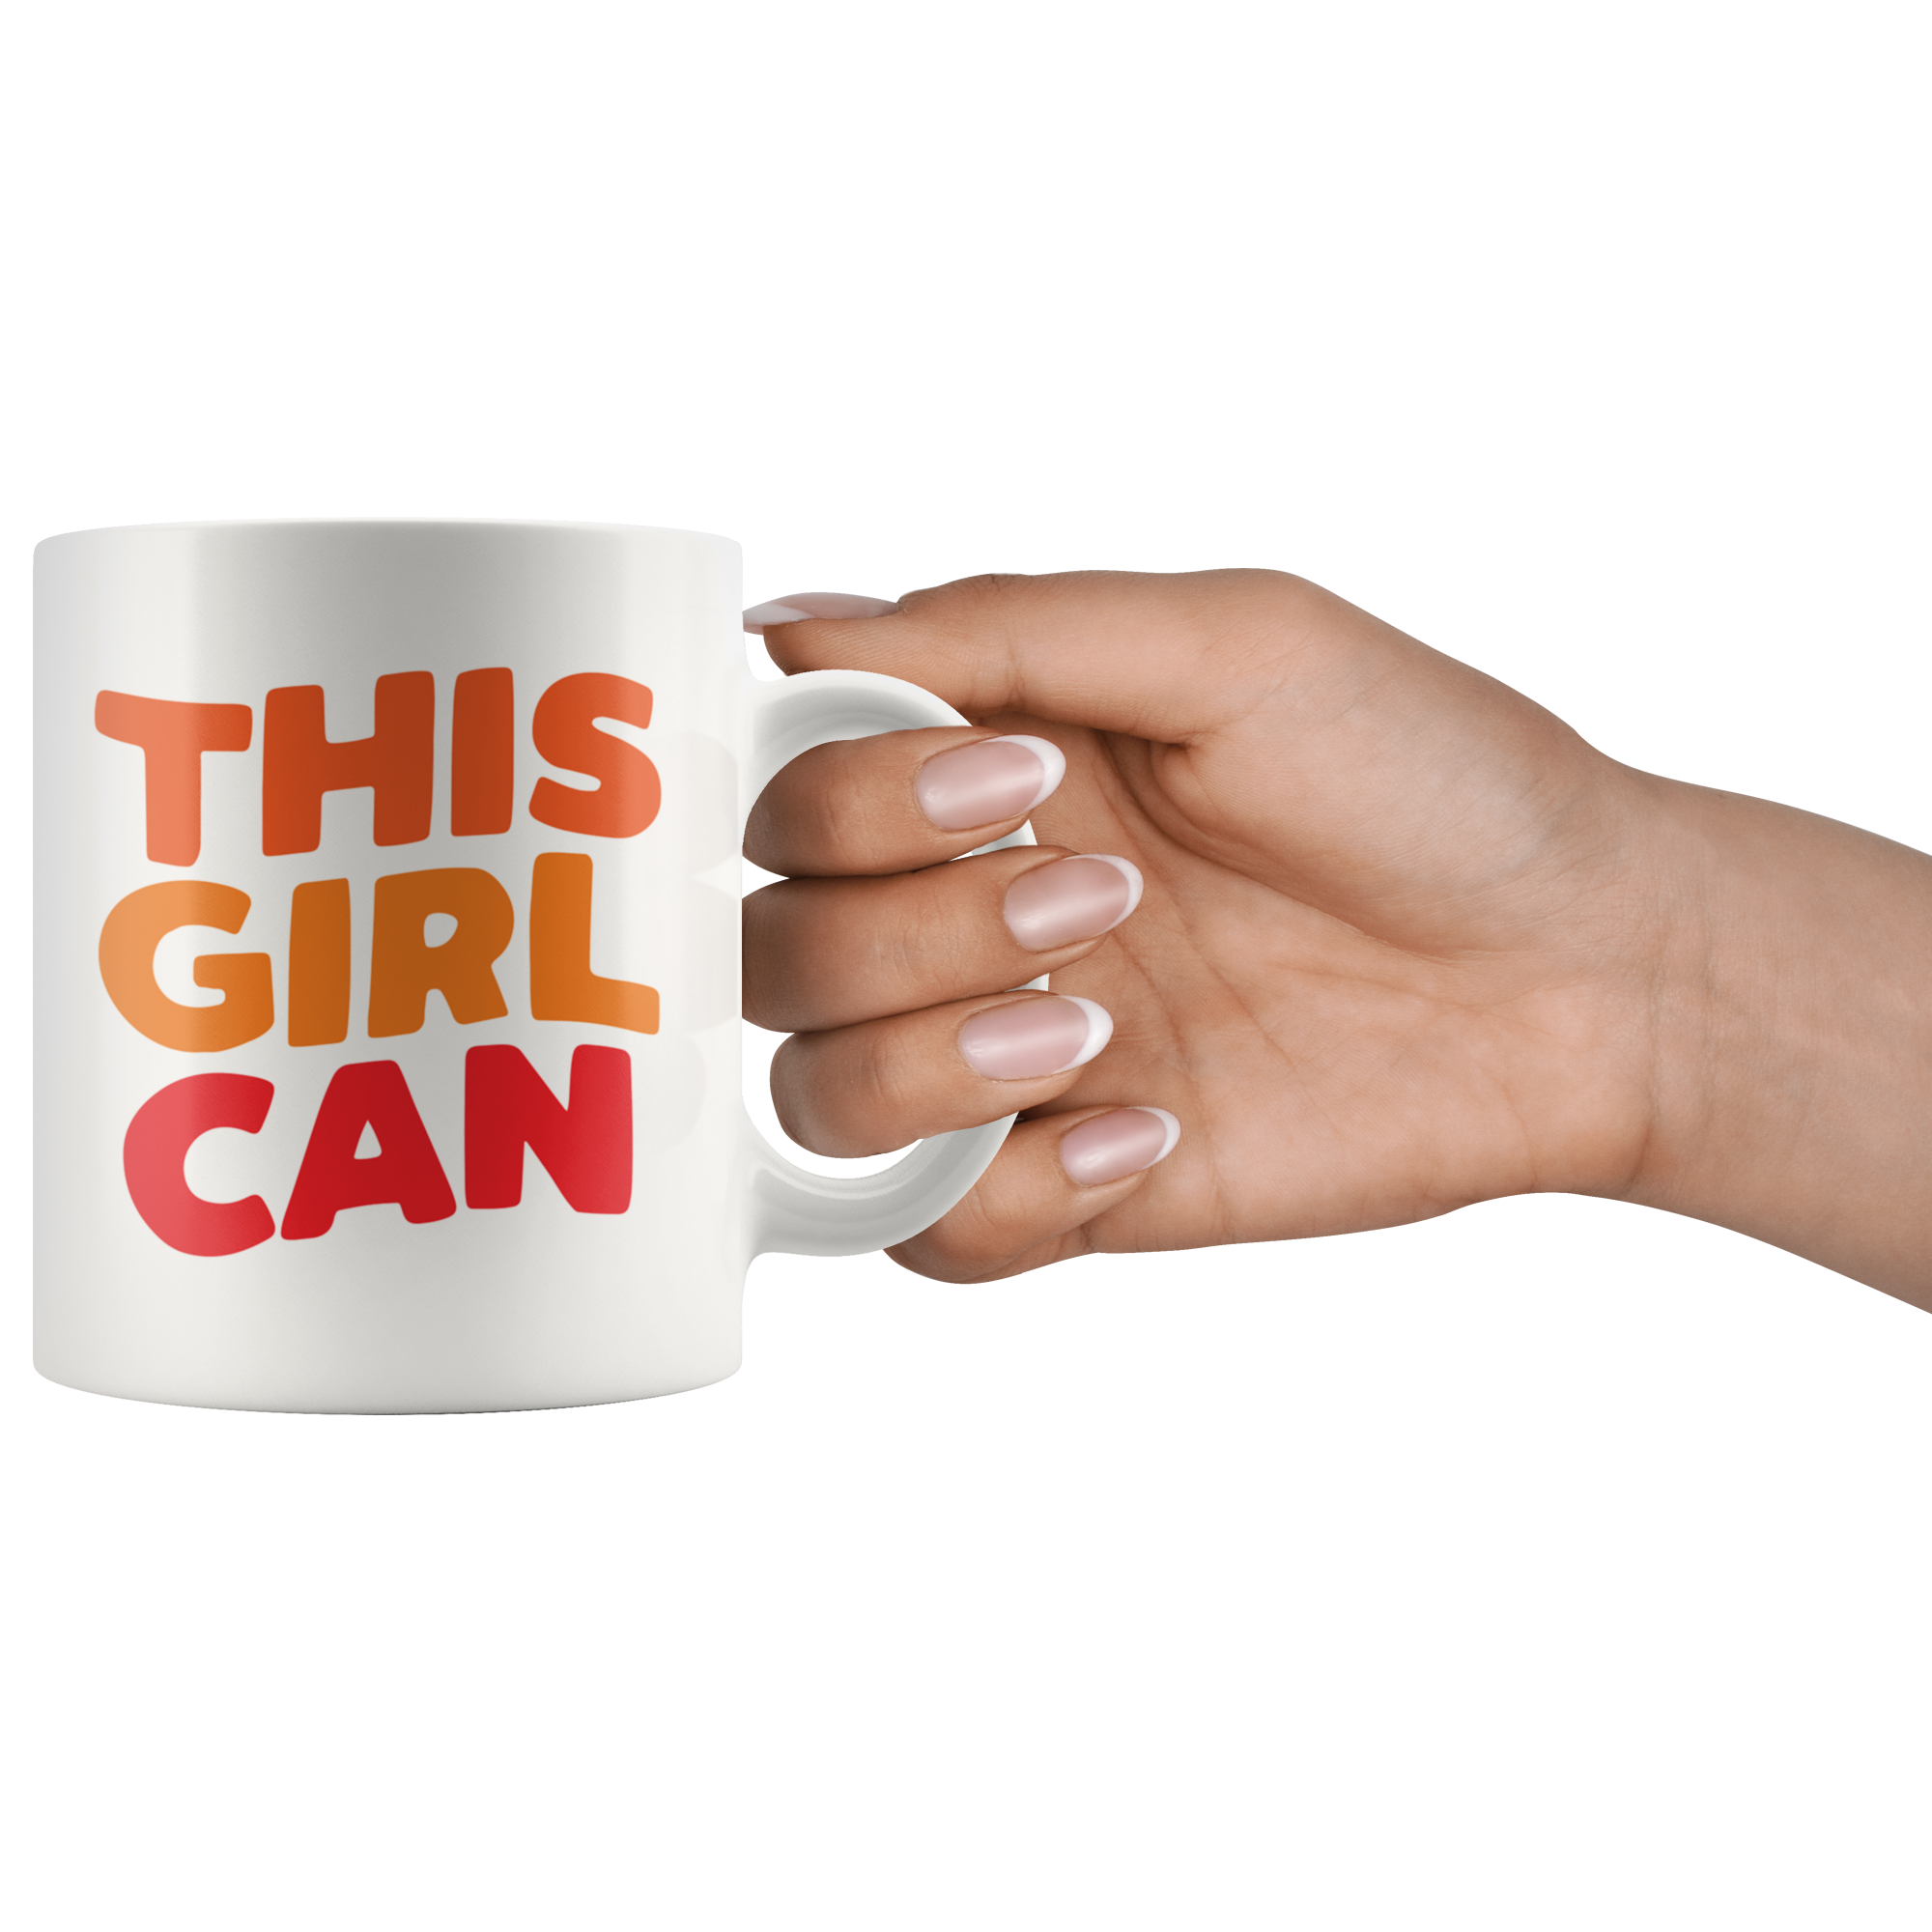 This Girl Can Coffee Mug